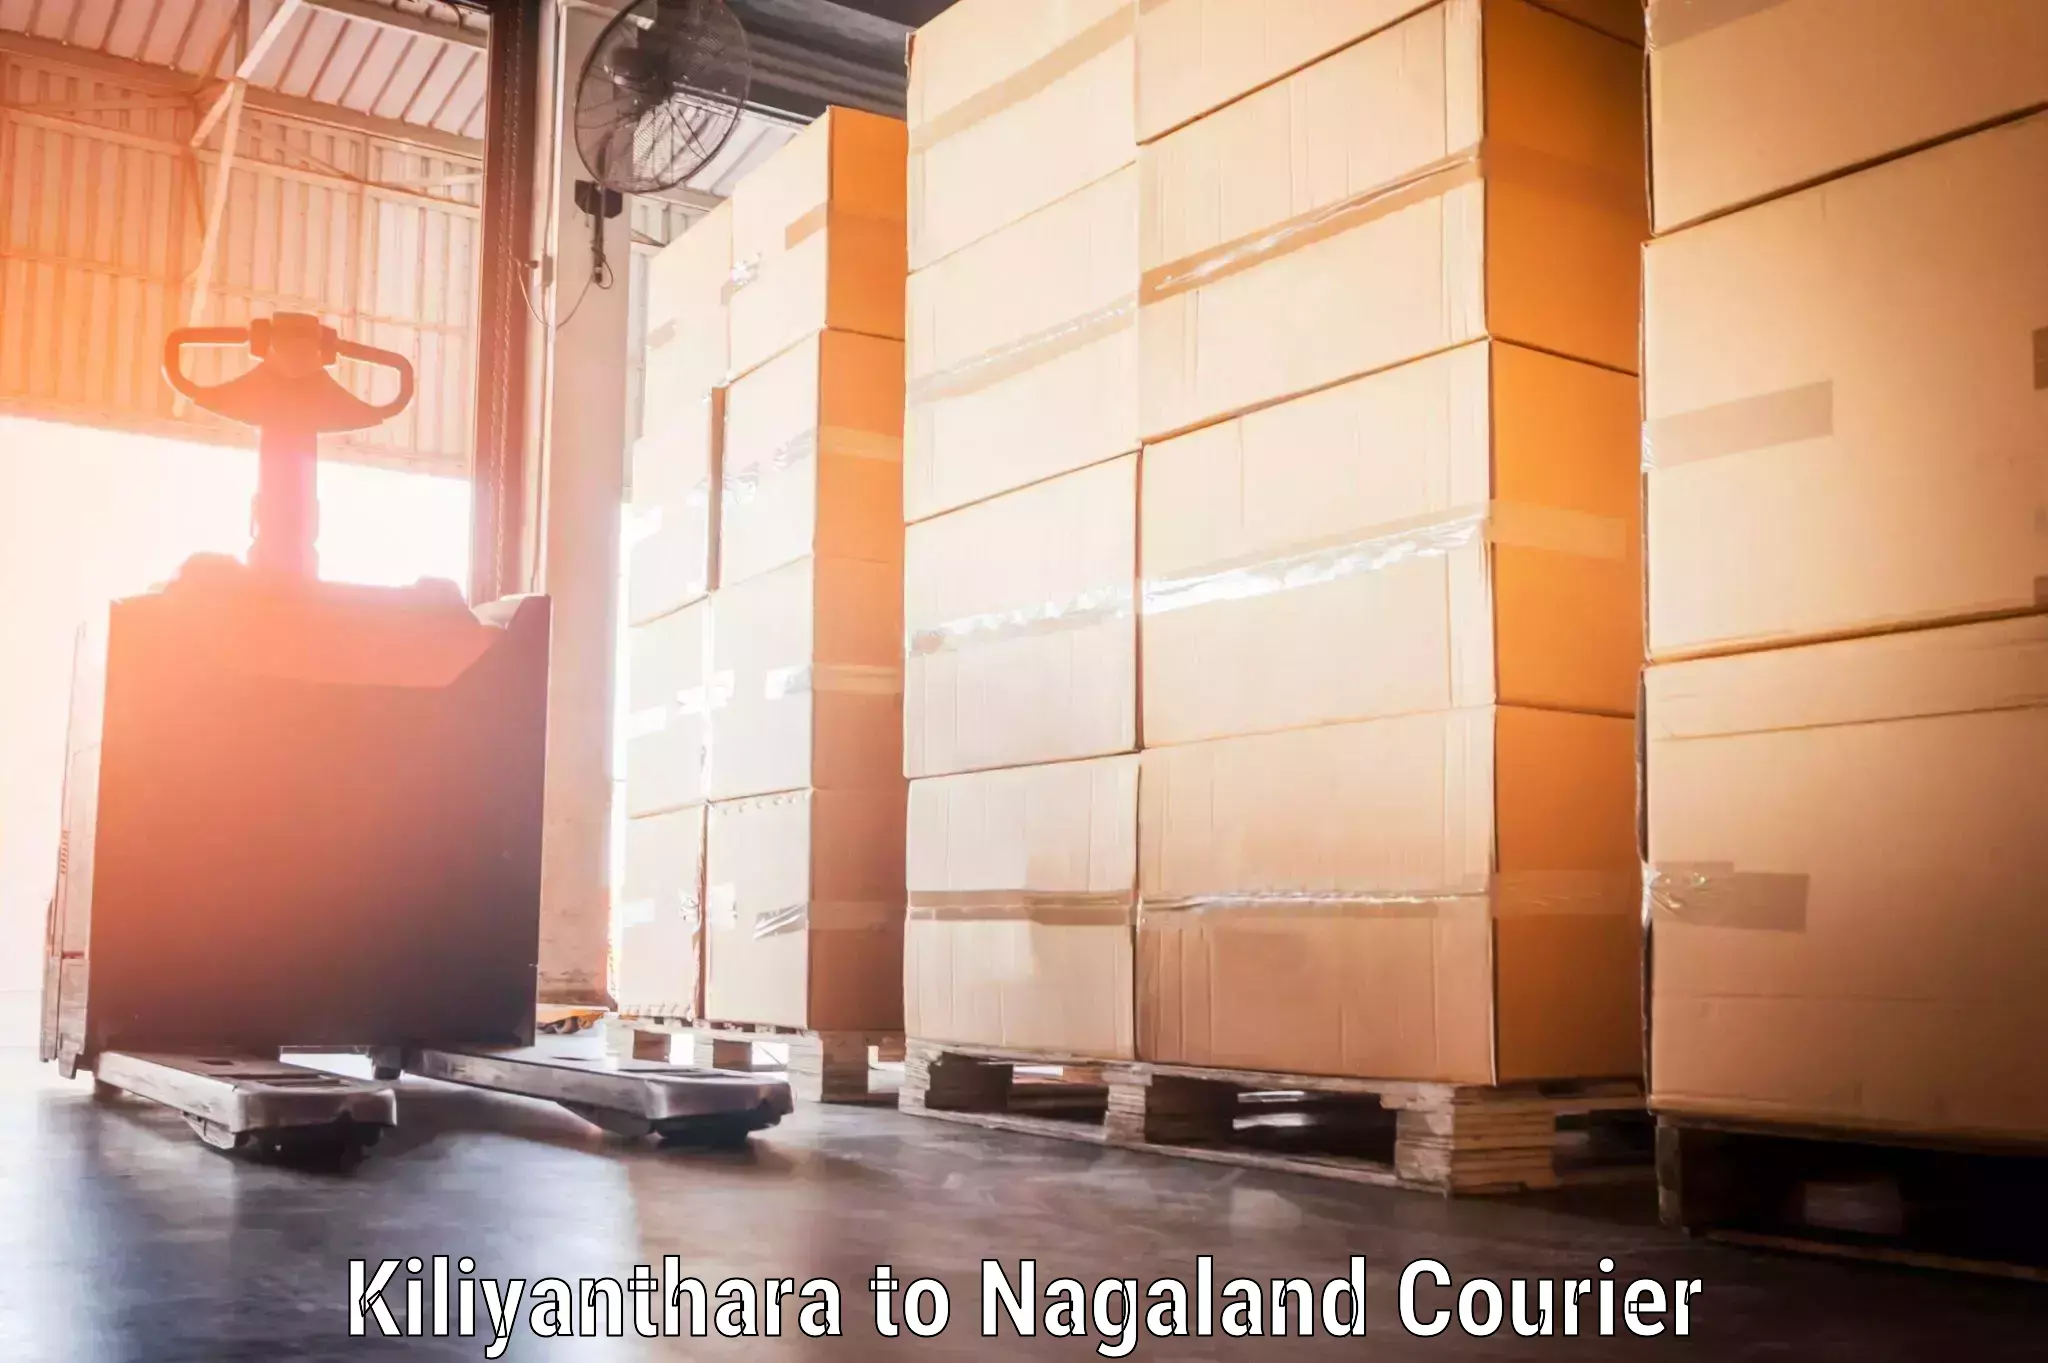 Digital baggage courier Kiliyanthara to Nagaland